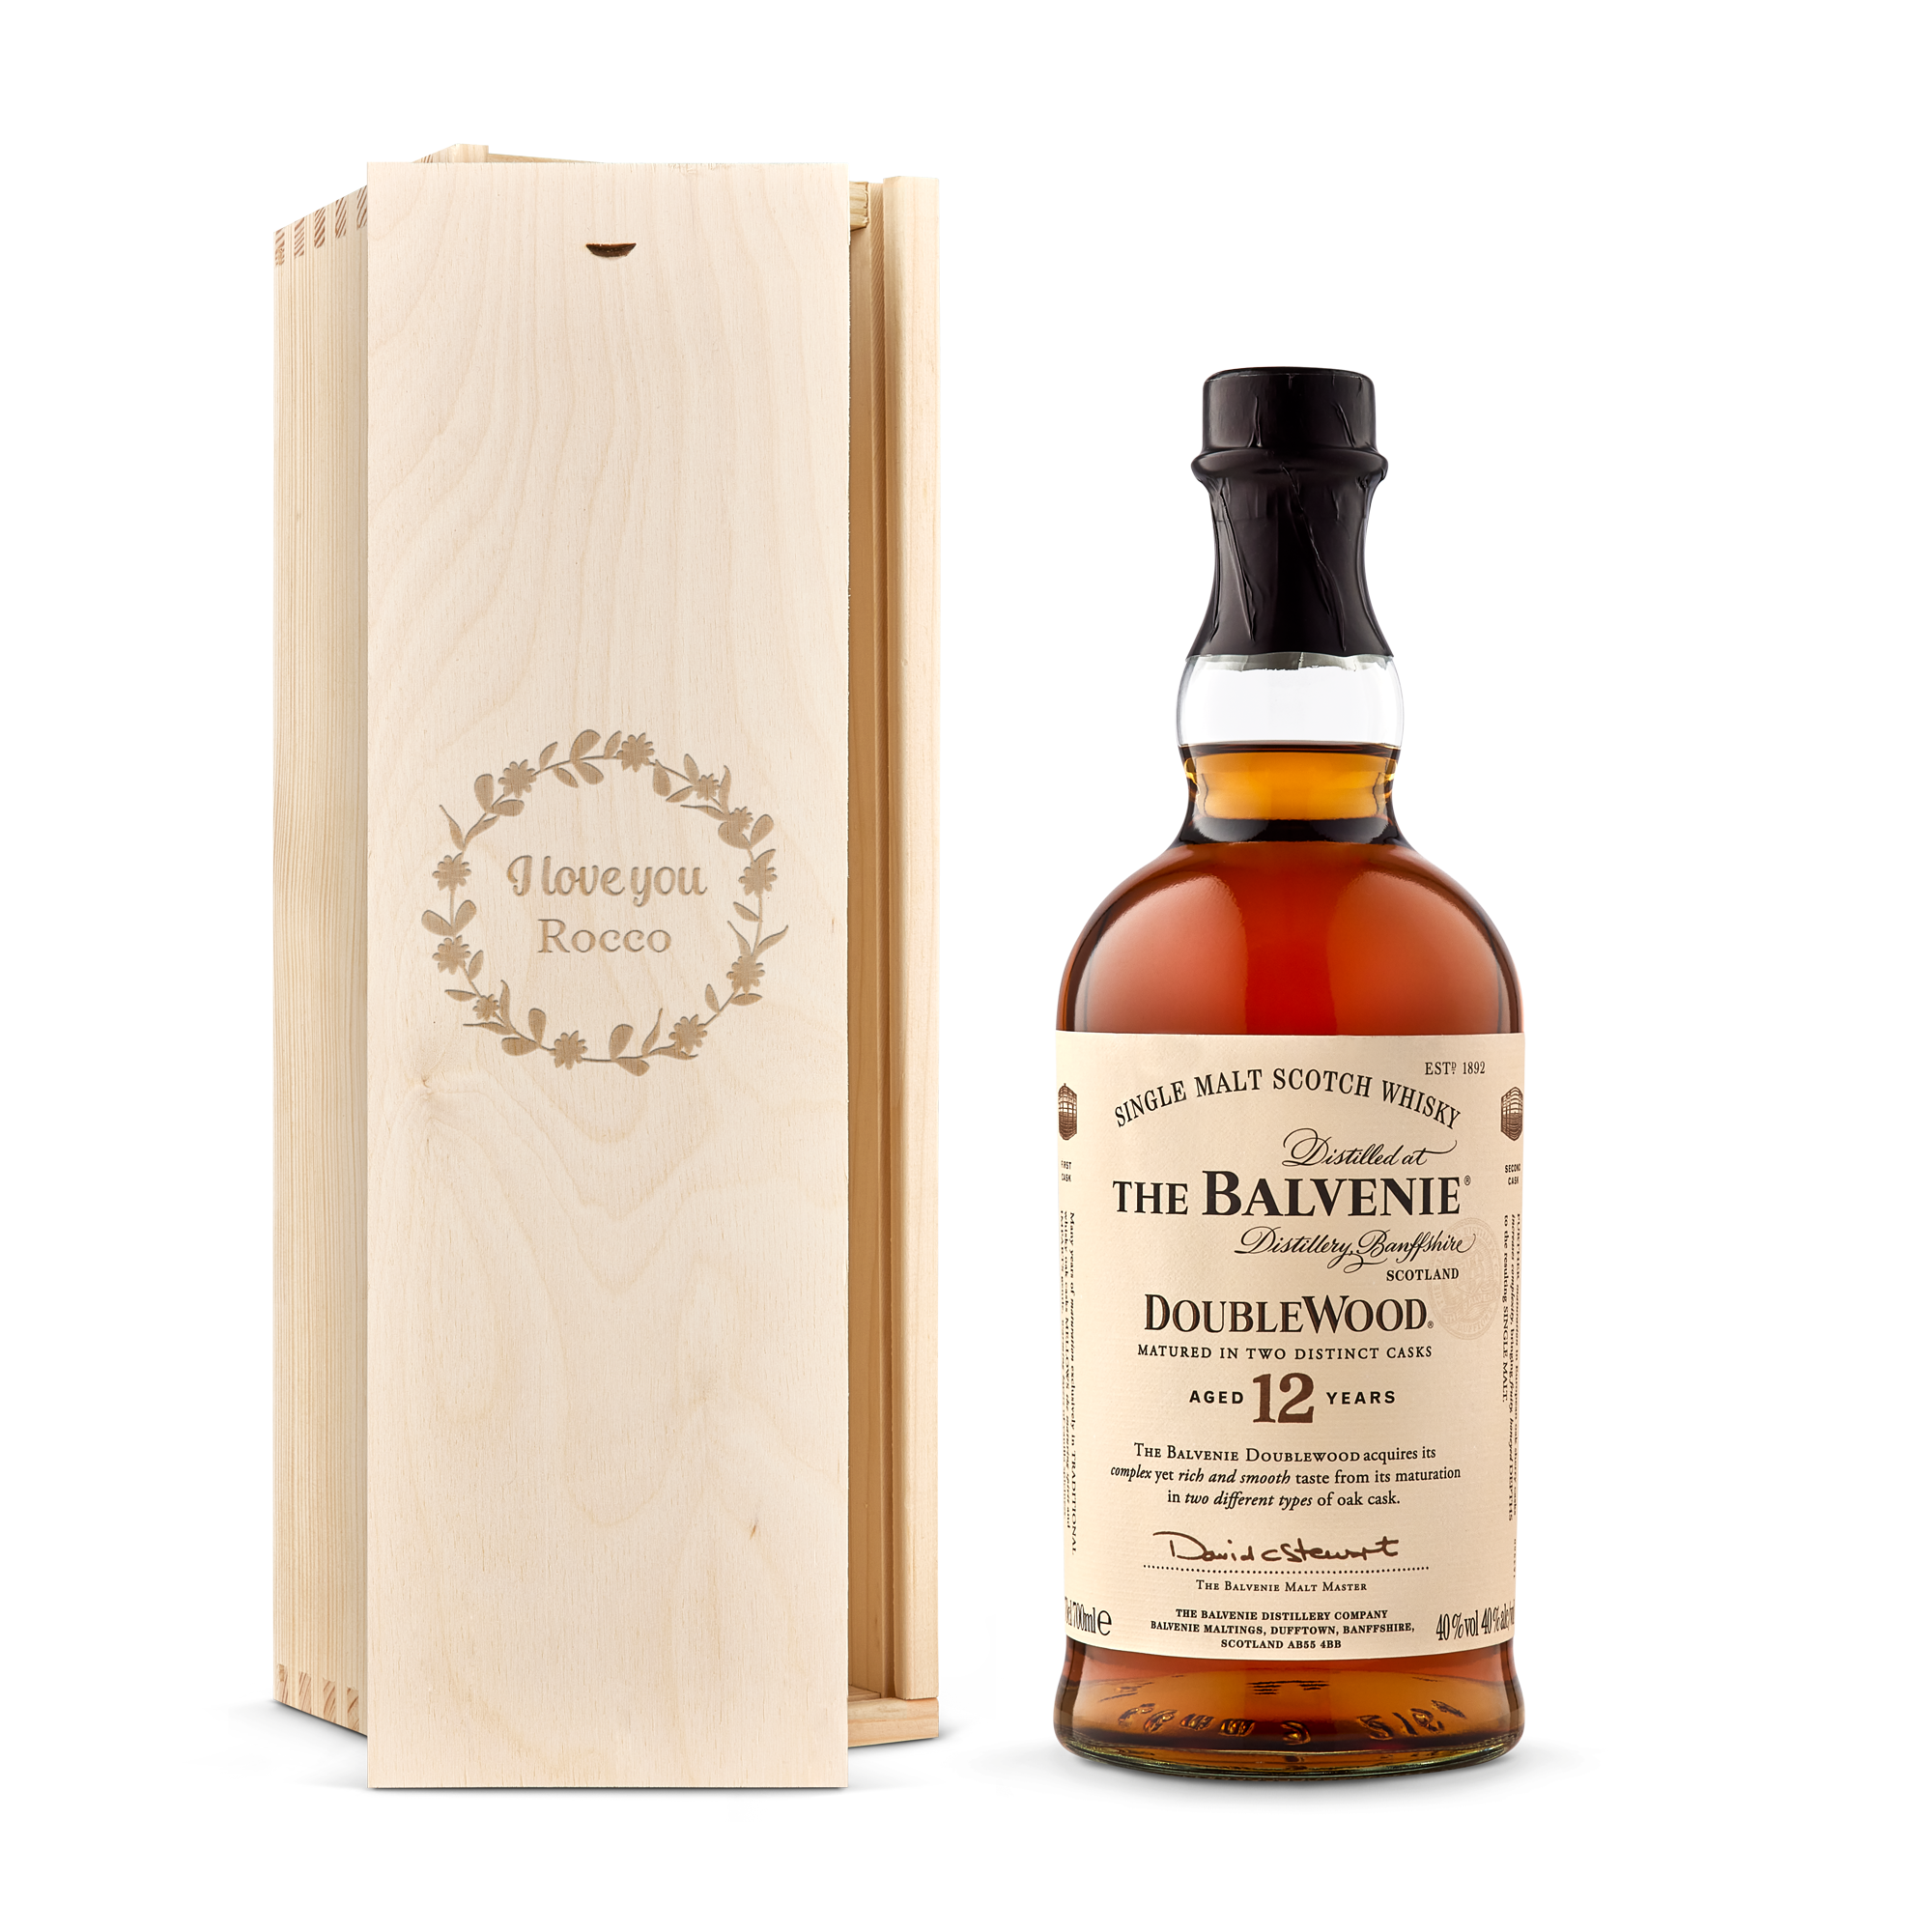 The Whisky The Balvenie